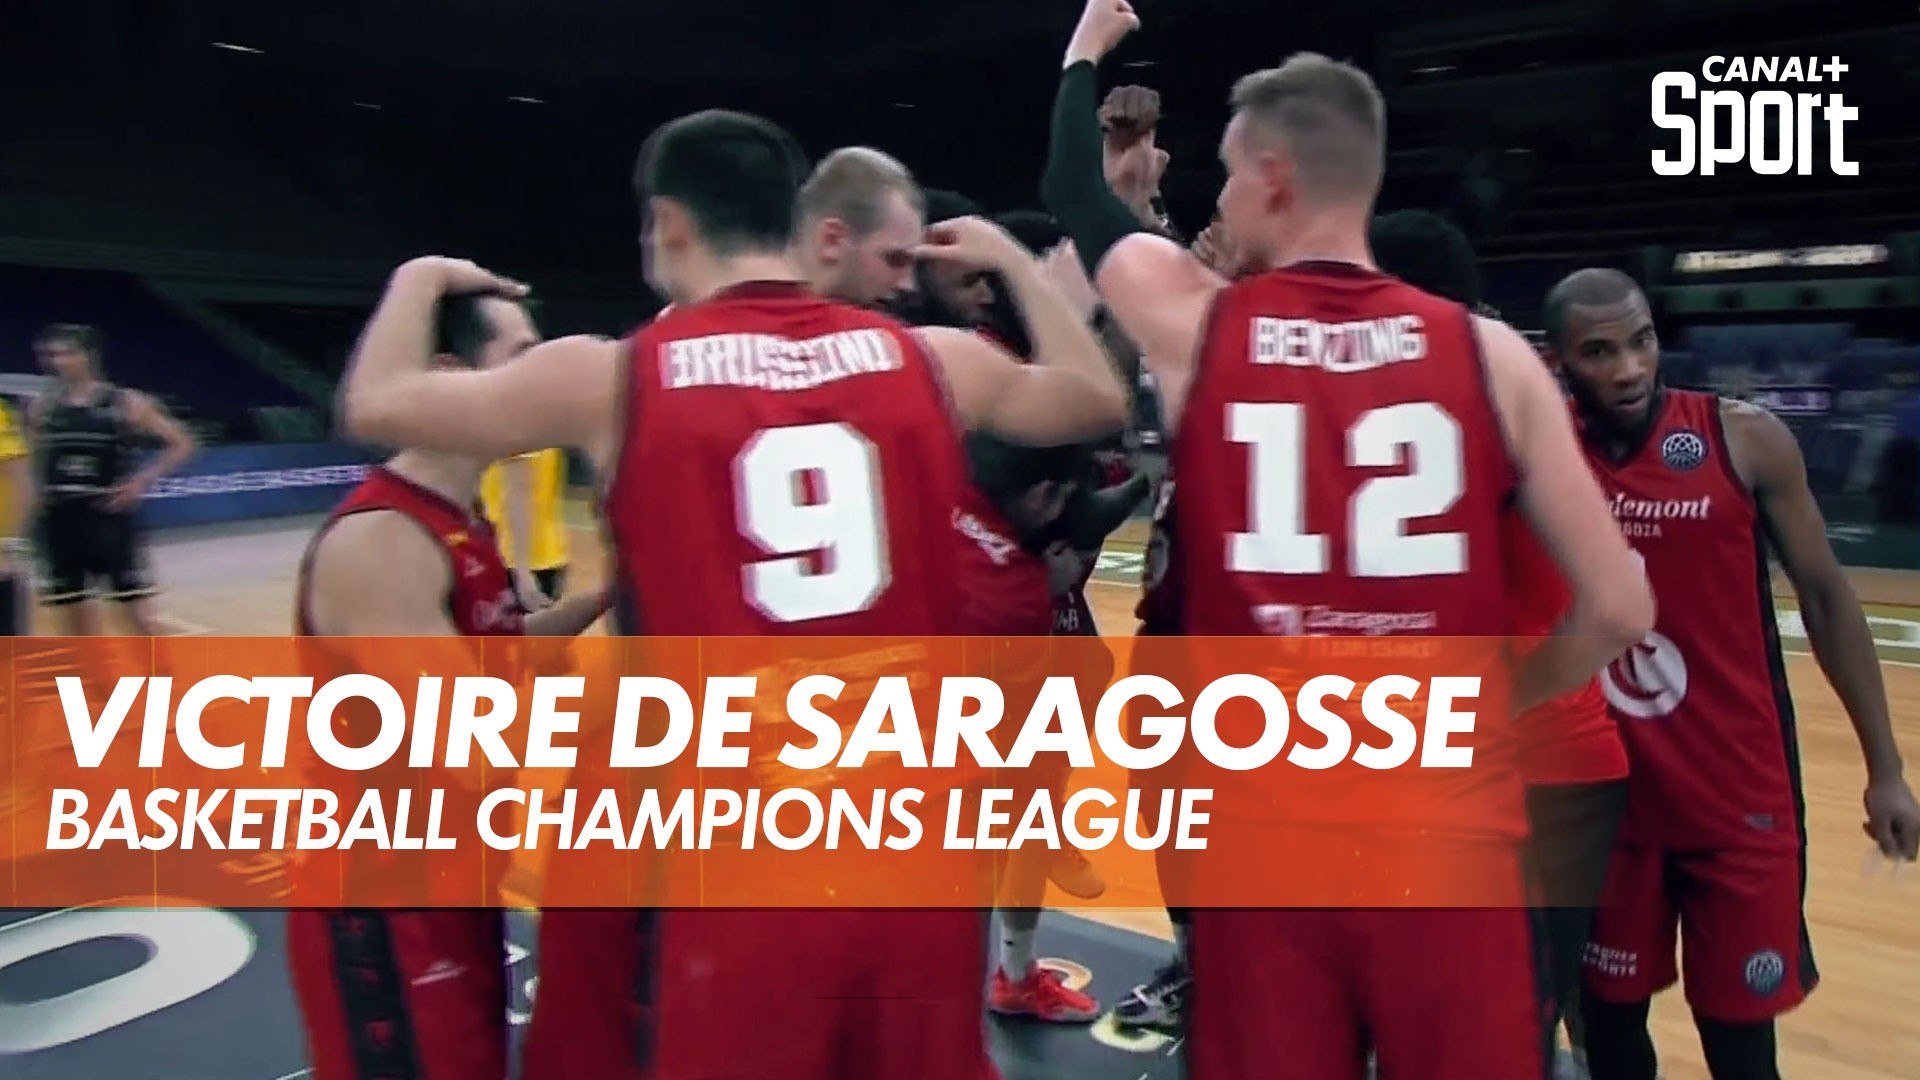 La victoire de Saragosse en Basketball Champions League - Vidéo Dailymotion